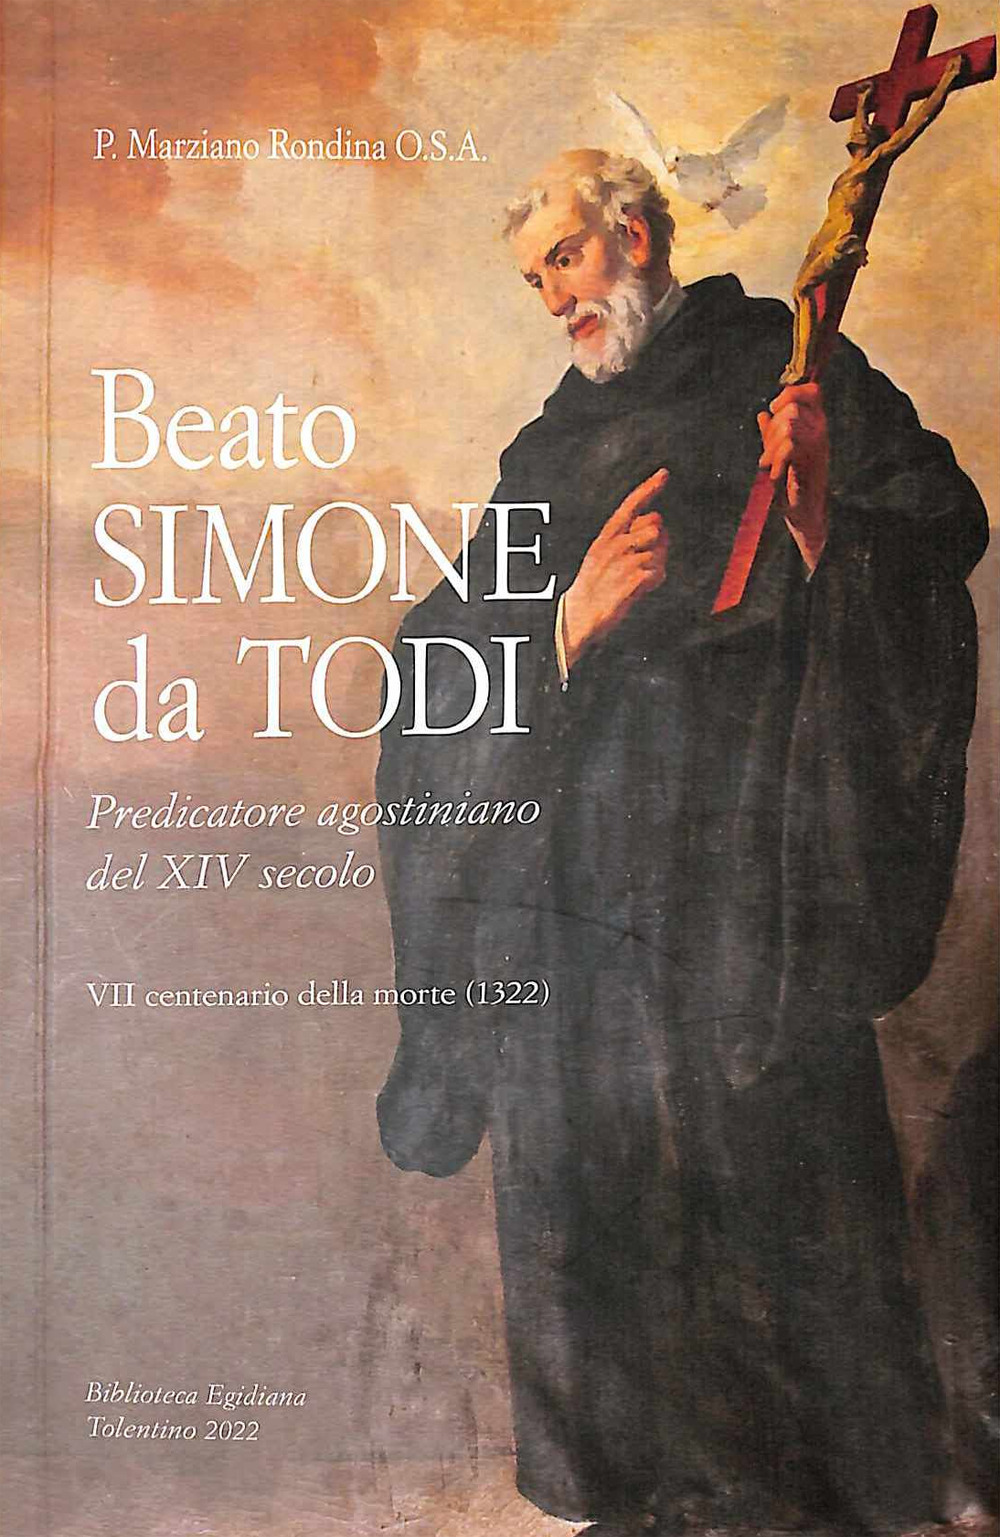 Beato Simone da Todi, predicatore agostiniano del XIV secolo. 7º centenario della morte (1322)